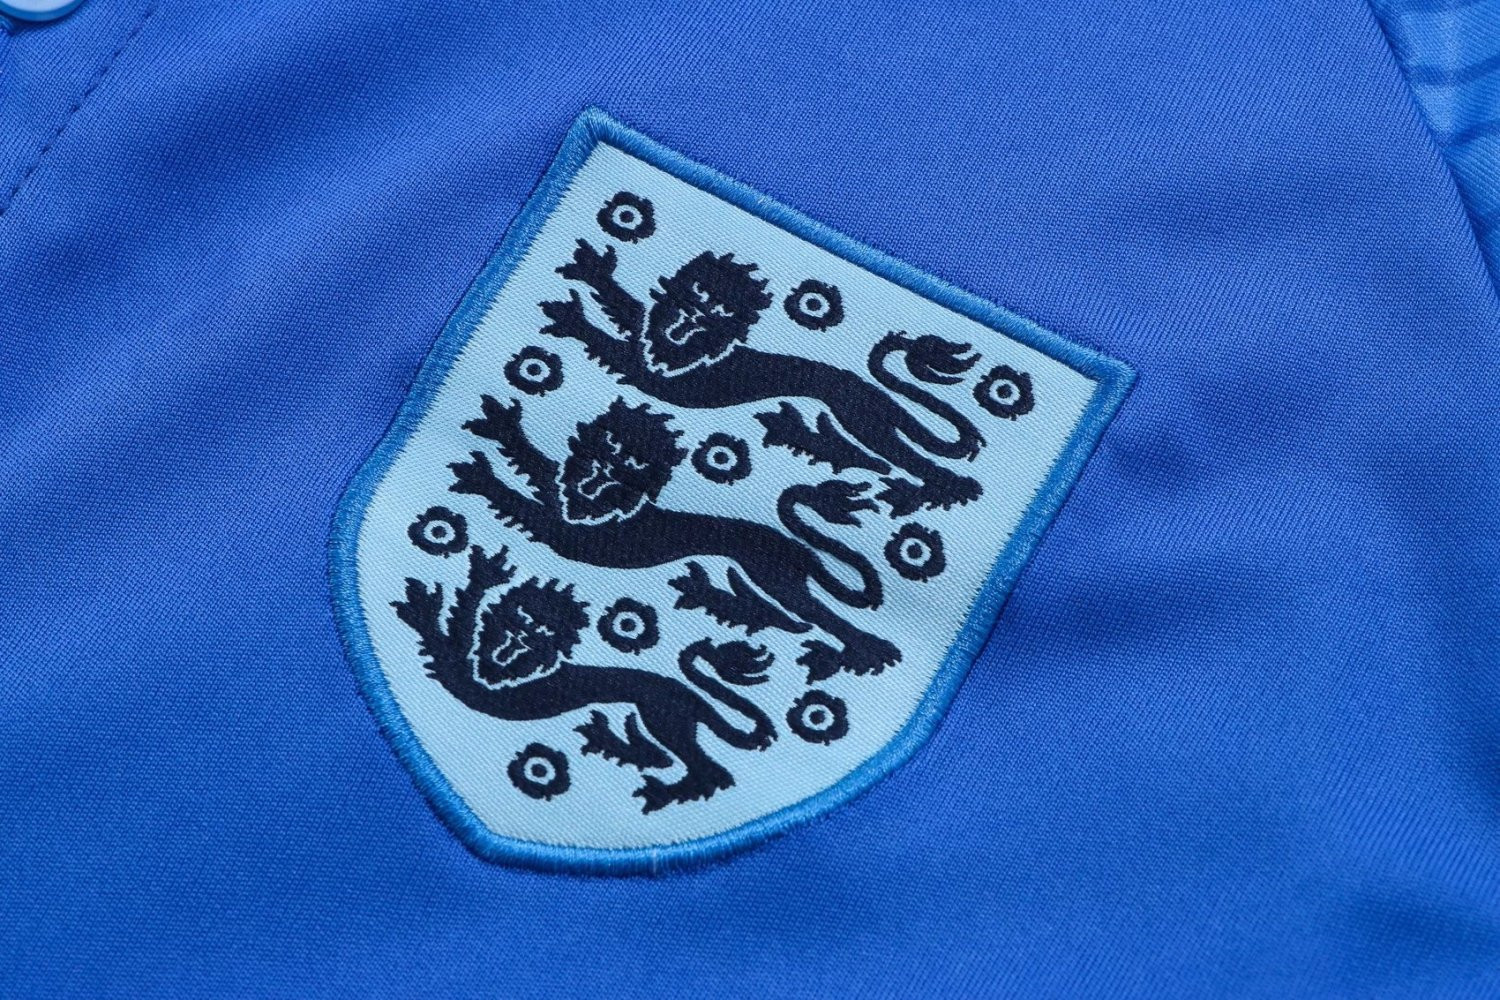 England Soccer Polo Jersey Replica Blue Mens 2022